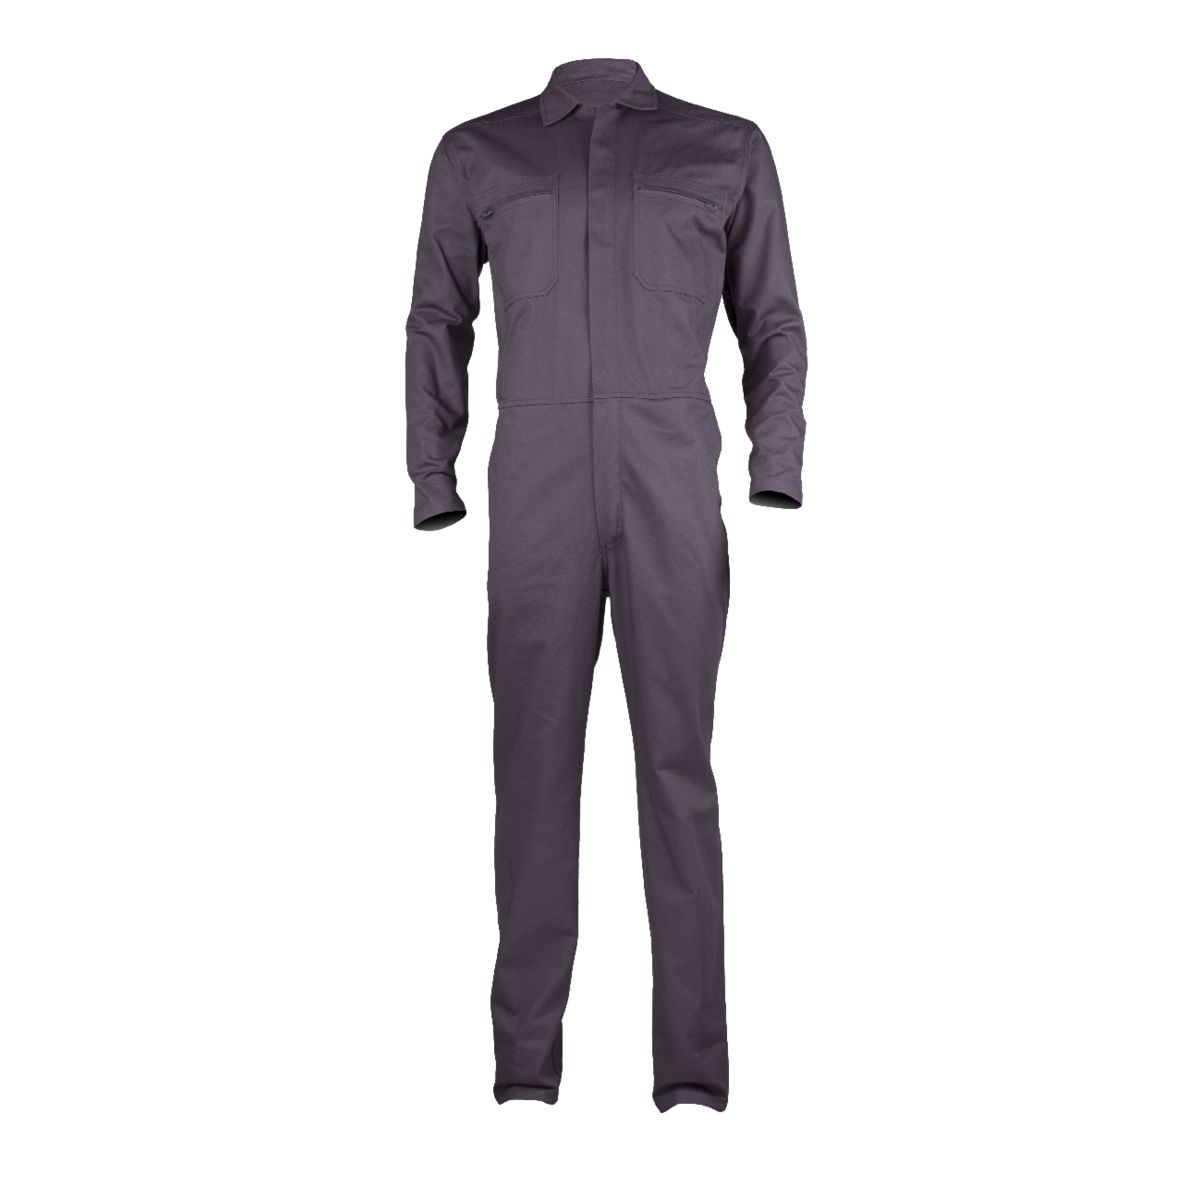 PARTNER Combinaison gris, 100% coton, 280g/m² - COVERGUARD - Taille S 0